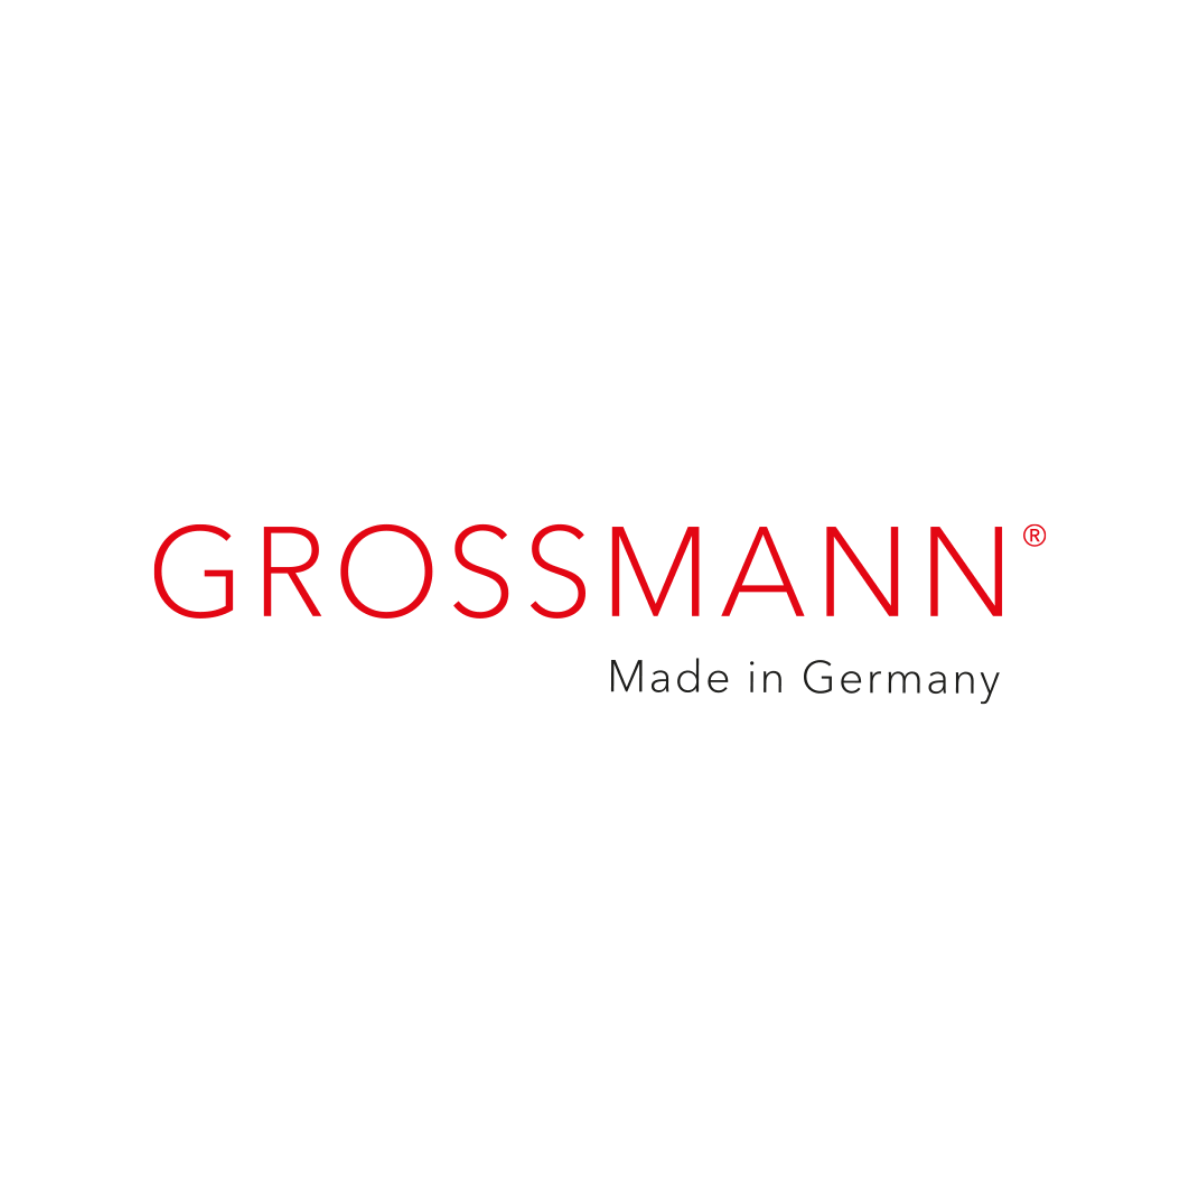 GROSSMANN